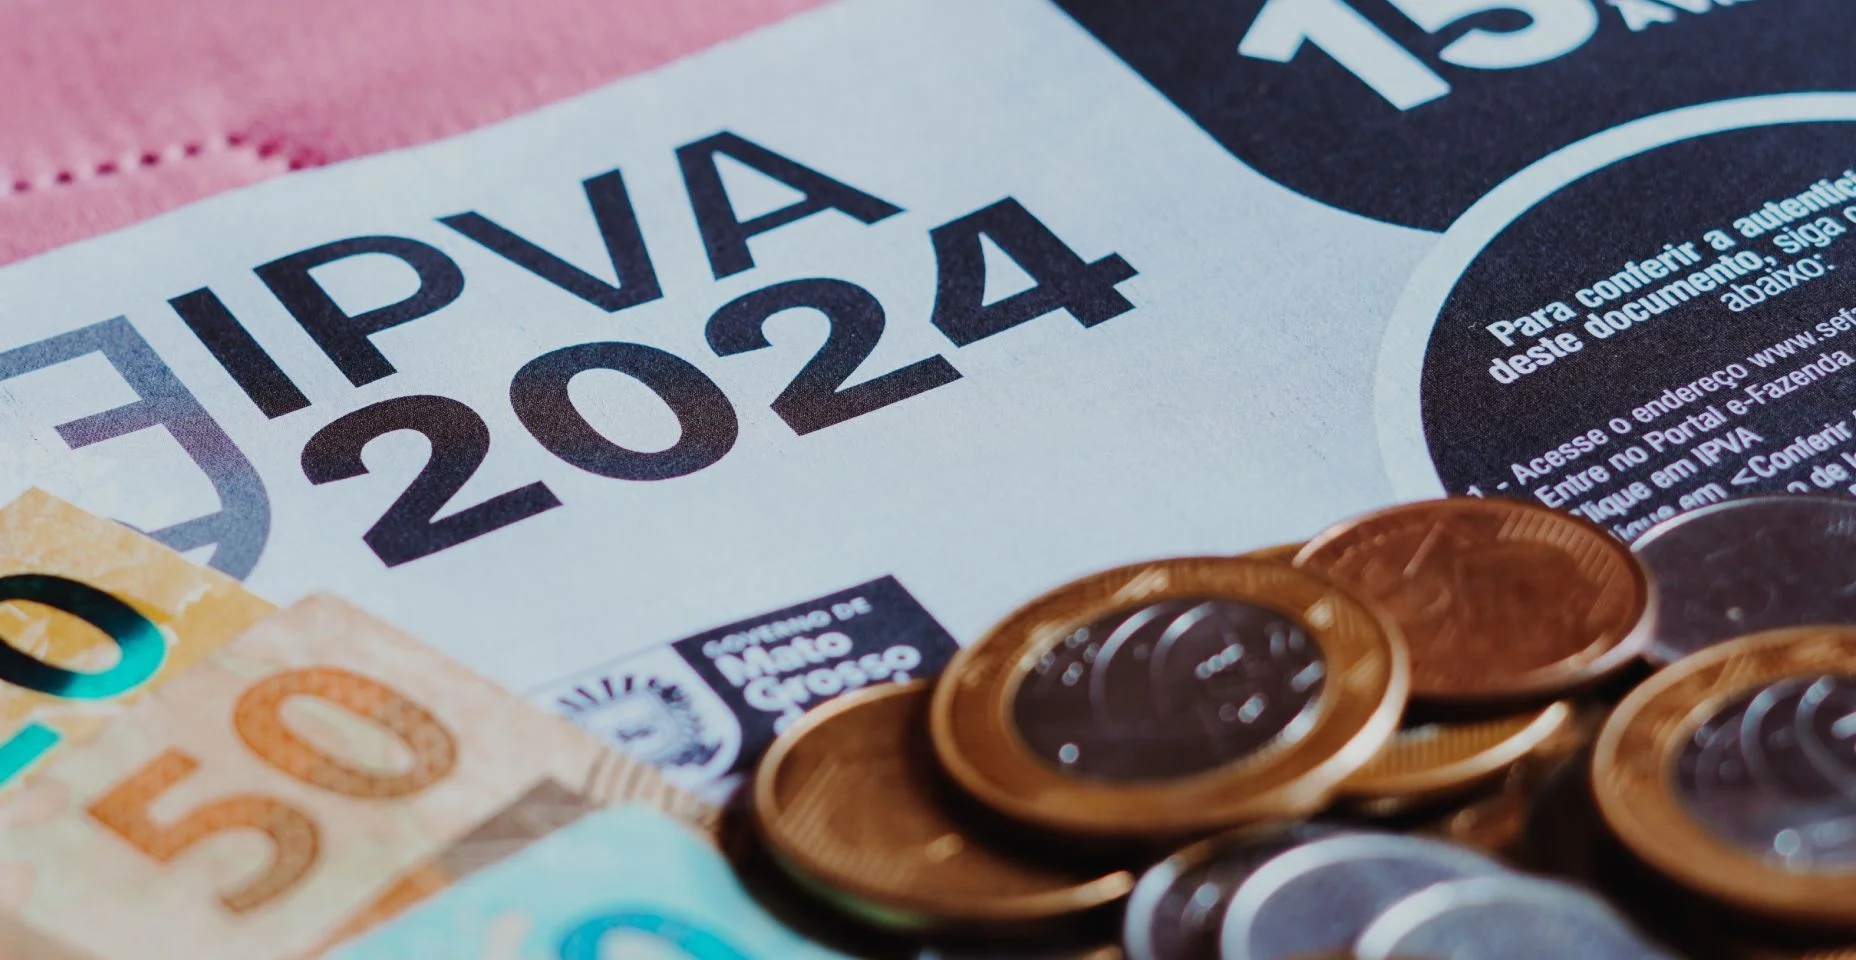 O boleto IPVA (Imposto sobre a Propriedade de Veículos Automotores) ao lado de cédulas e moedas de dinheiro real brasileiro.